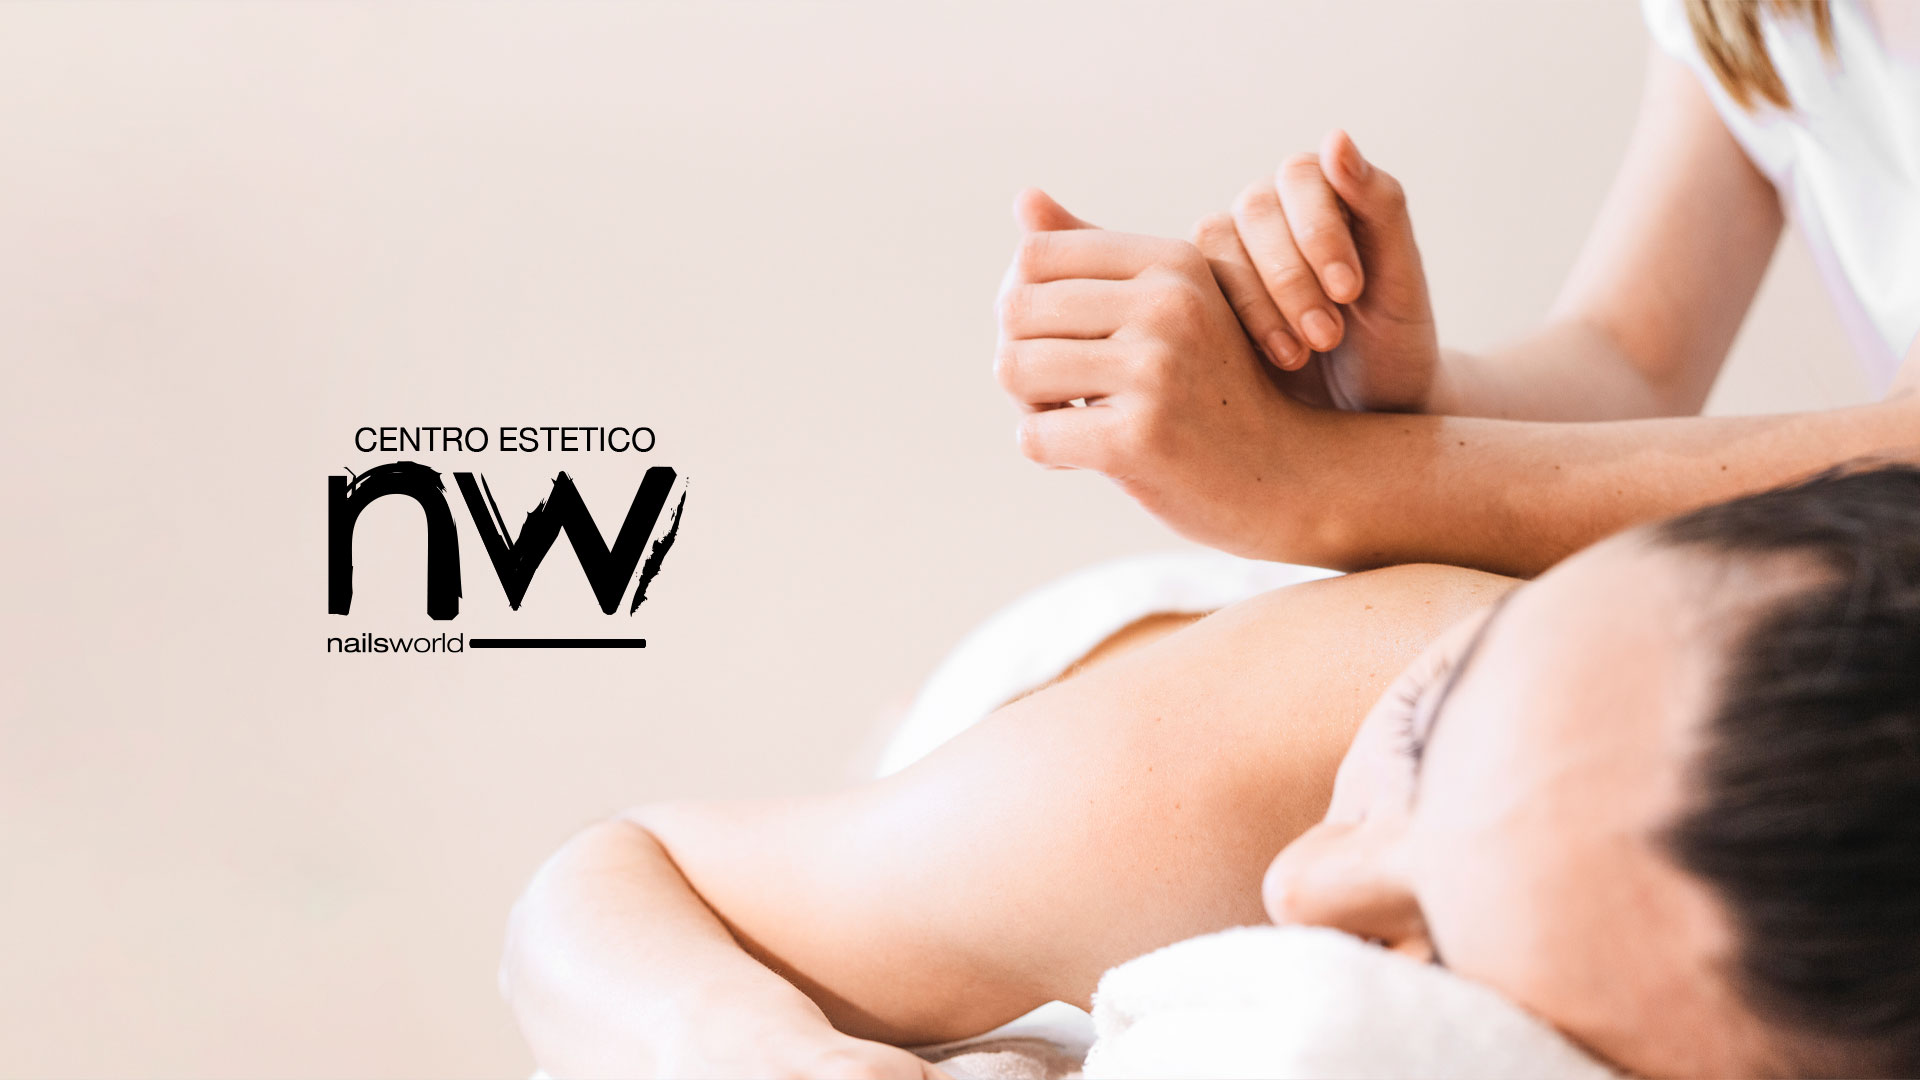 cnw slide 05 - Centro Estetico Nailsworld